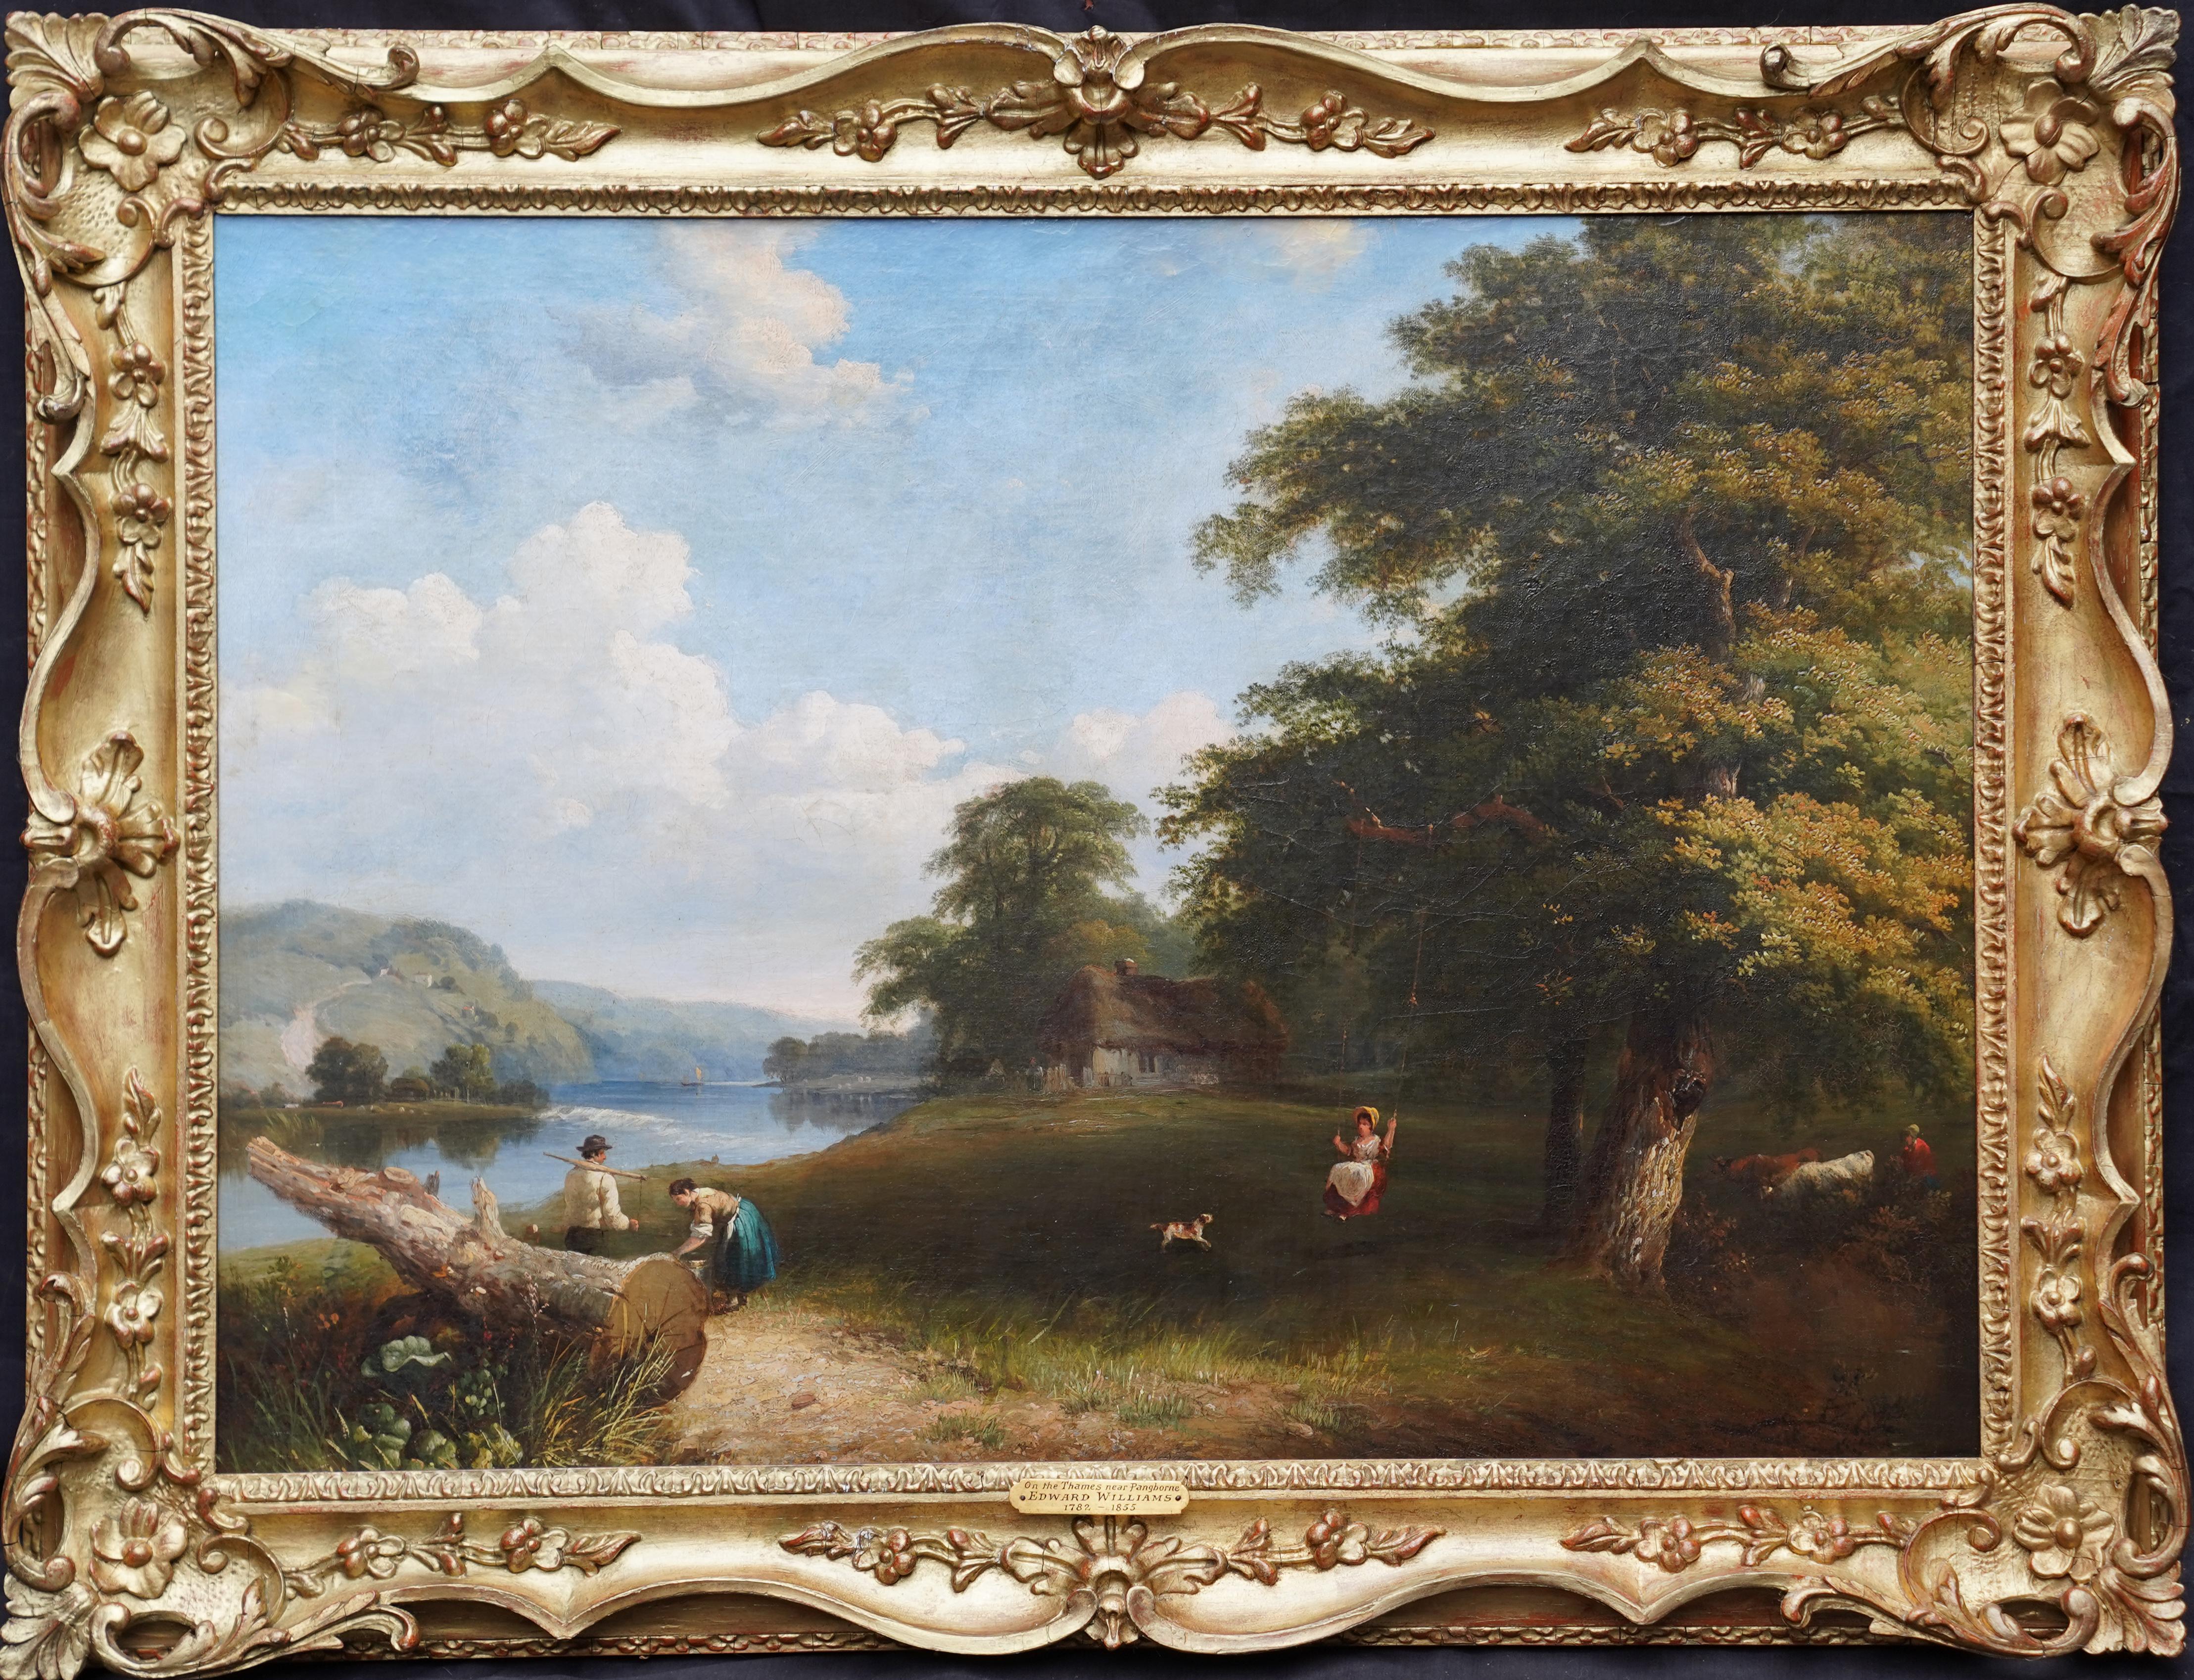 Thames Pangbourne Landscape - British Victorian art riverscape oil painting 3